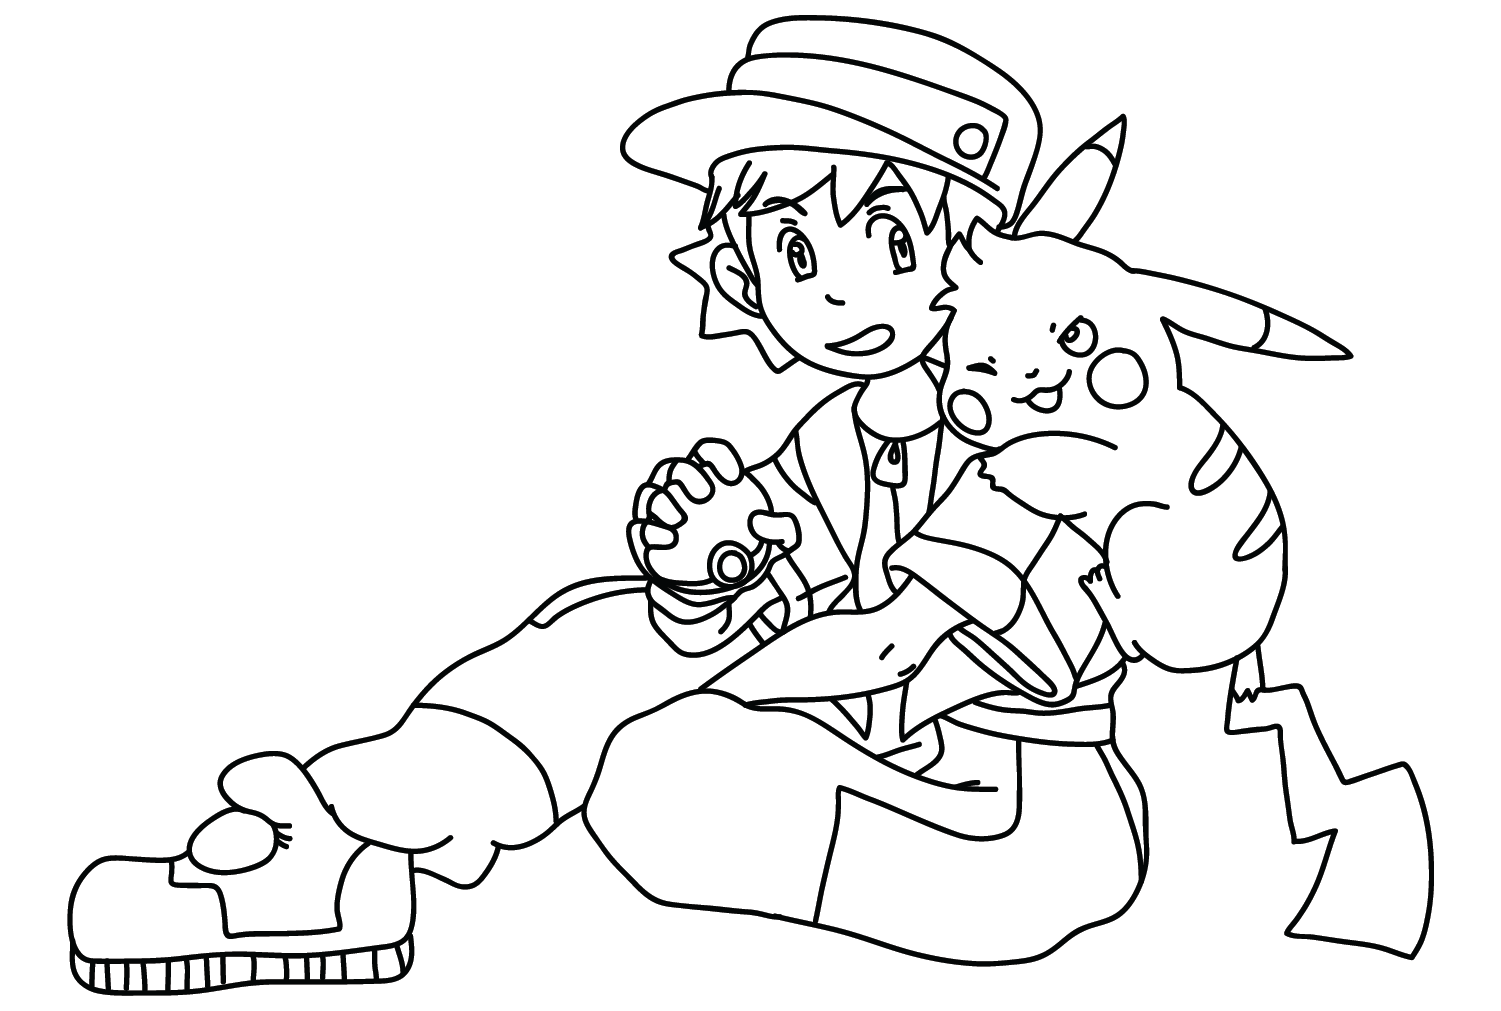 Páginas para colorir de Pokémon Pikachu e Ritchie para impressão em Pikachu